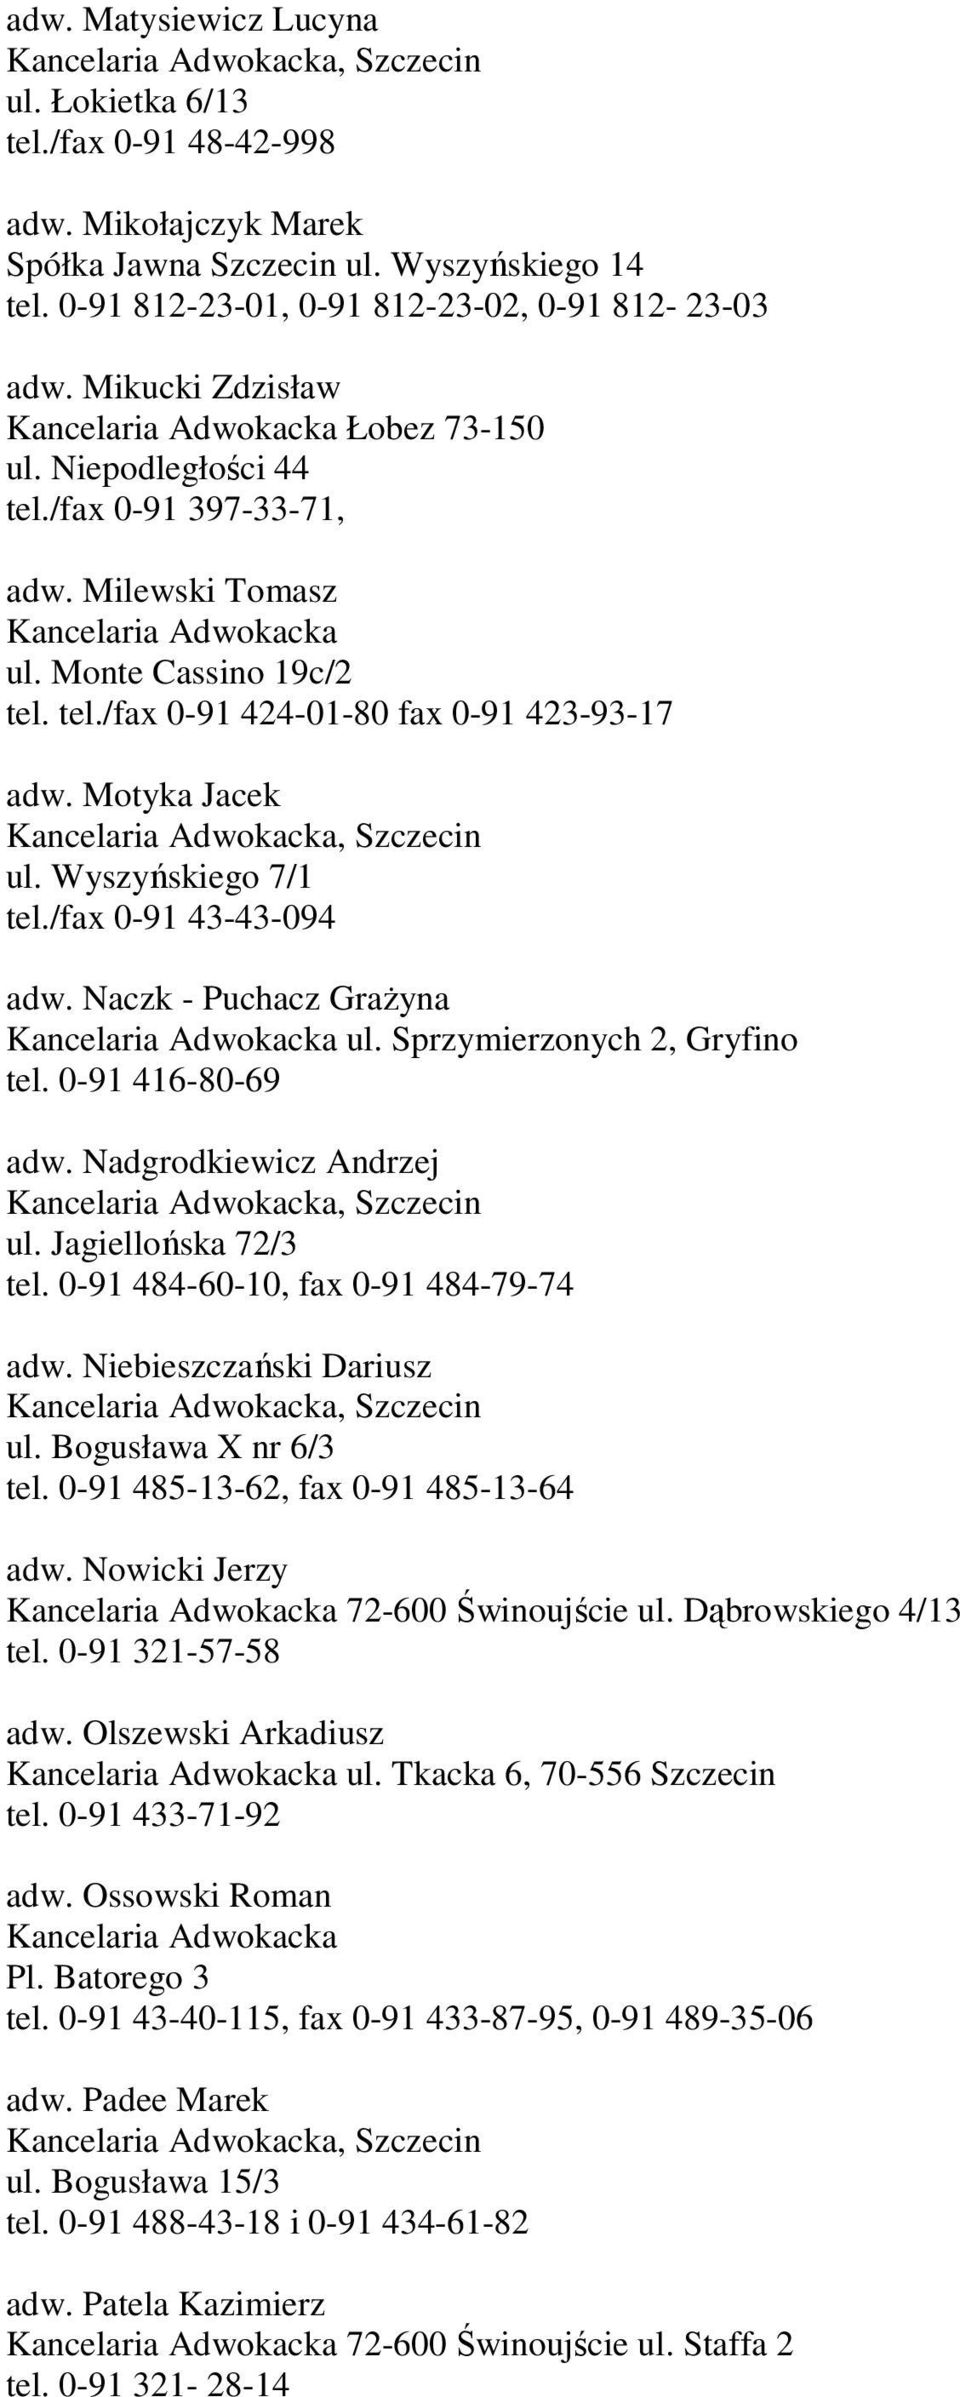 Motyka Jacek ul. Wyszyńskiego 7/1 tel./fax 0-91 43-43-094 adw. Naczk - Puchacz GraŜyna Kancelaria Adwokacka ul. Sprzymierzonych 2, Gryfino tel. 0-91 416-80-69 adw. Nadgrodkiewicz Andrzej ul.